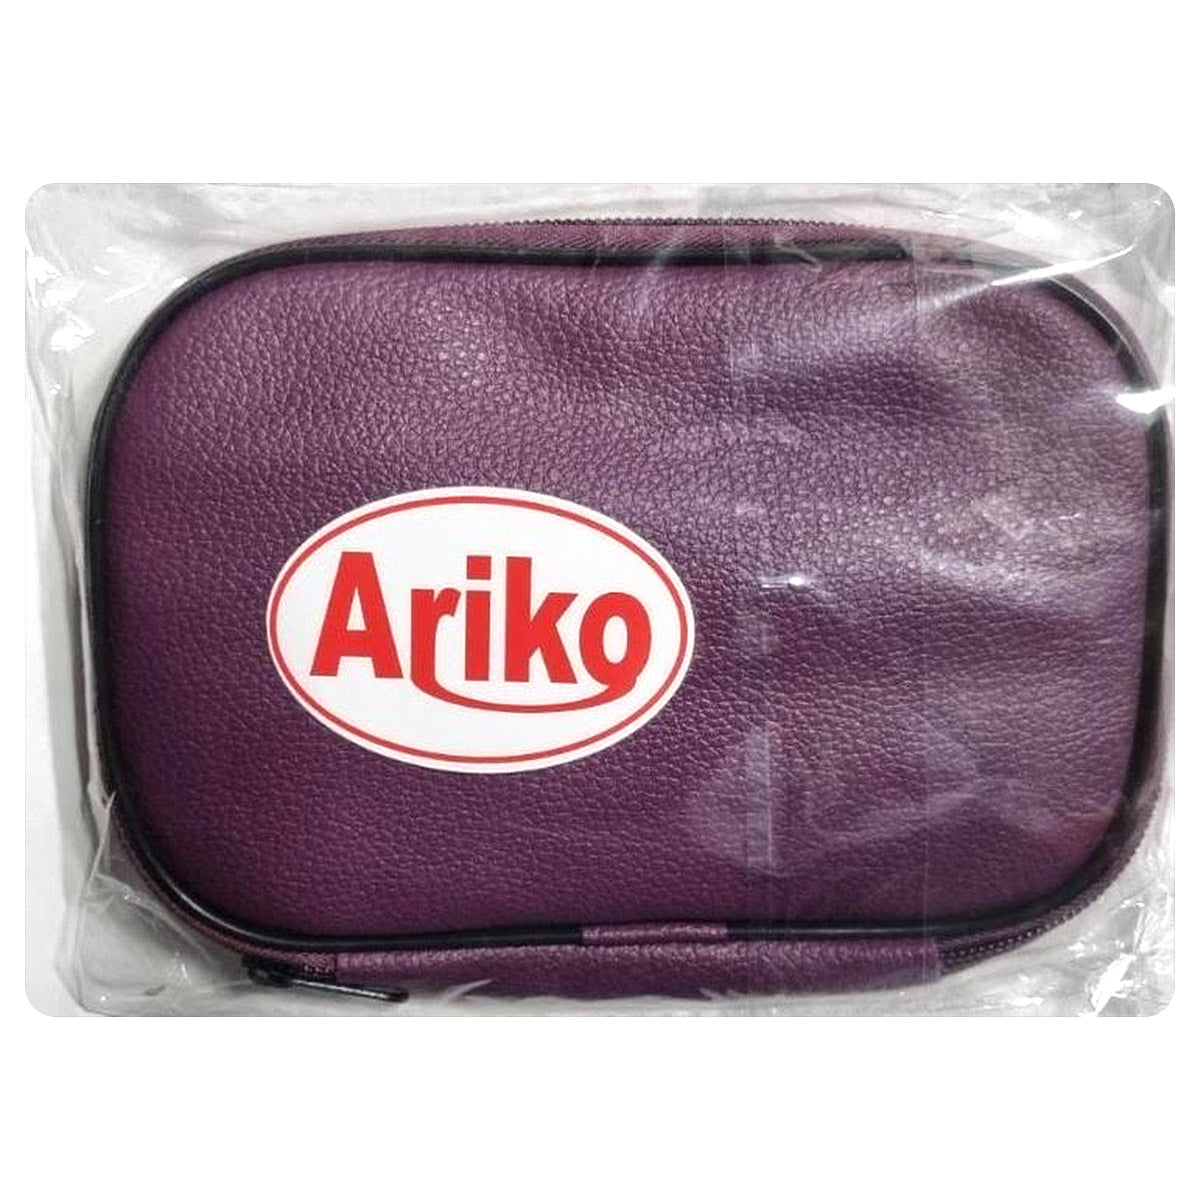 Ariko Haakset XXL Deluxe | 50 delig | in Etui | Ergonomische Haaknaalden set | Breinaald Kit | Anti-slip ergonomische Haaknaaldenset | Haak & Brei accessoires | Paars